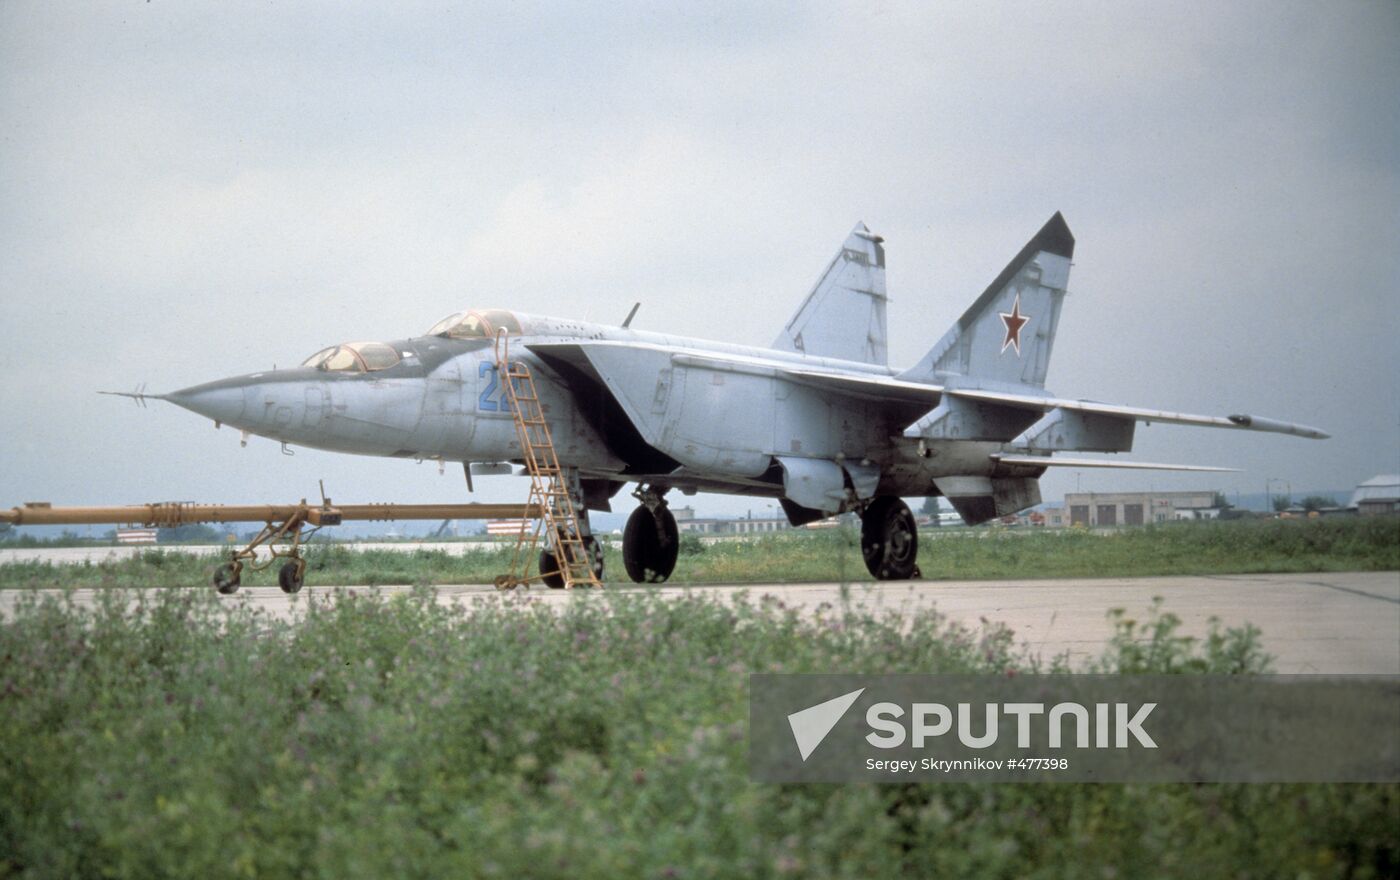 Soviet MiG-25 interceptor